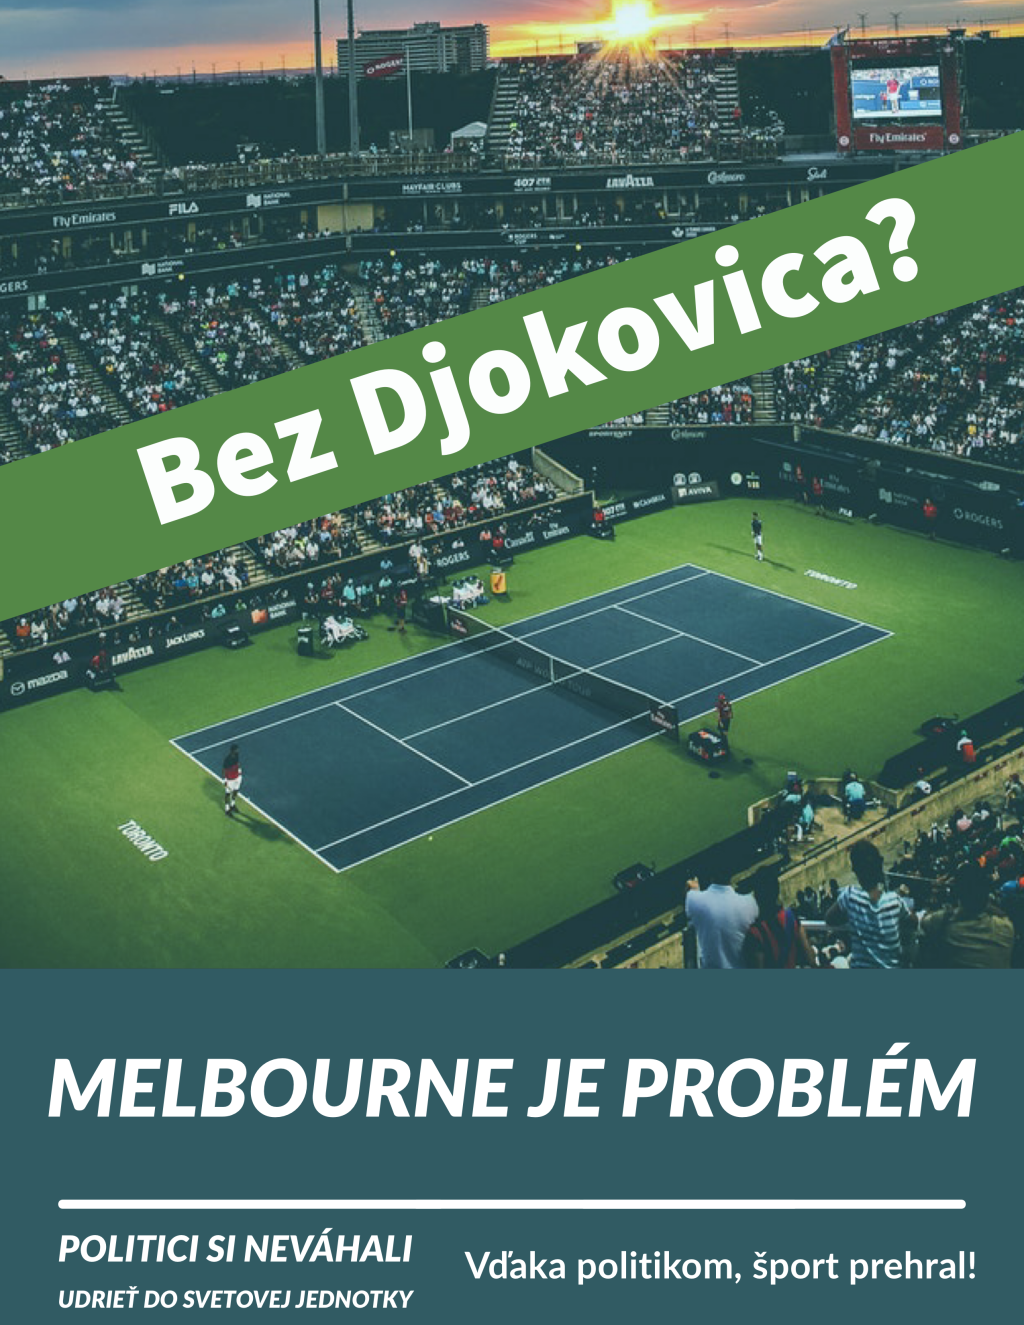 Austrália si nezaslúži organizovať tenisový grandslam! A prečo Djokovič môže uspieť na súde?